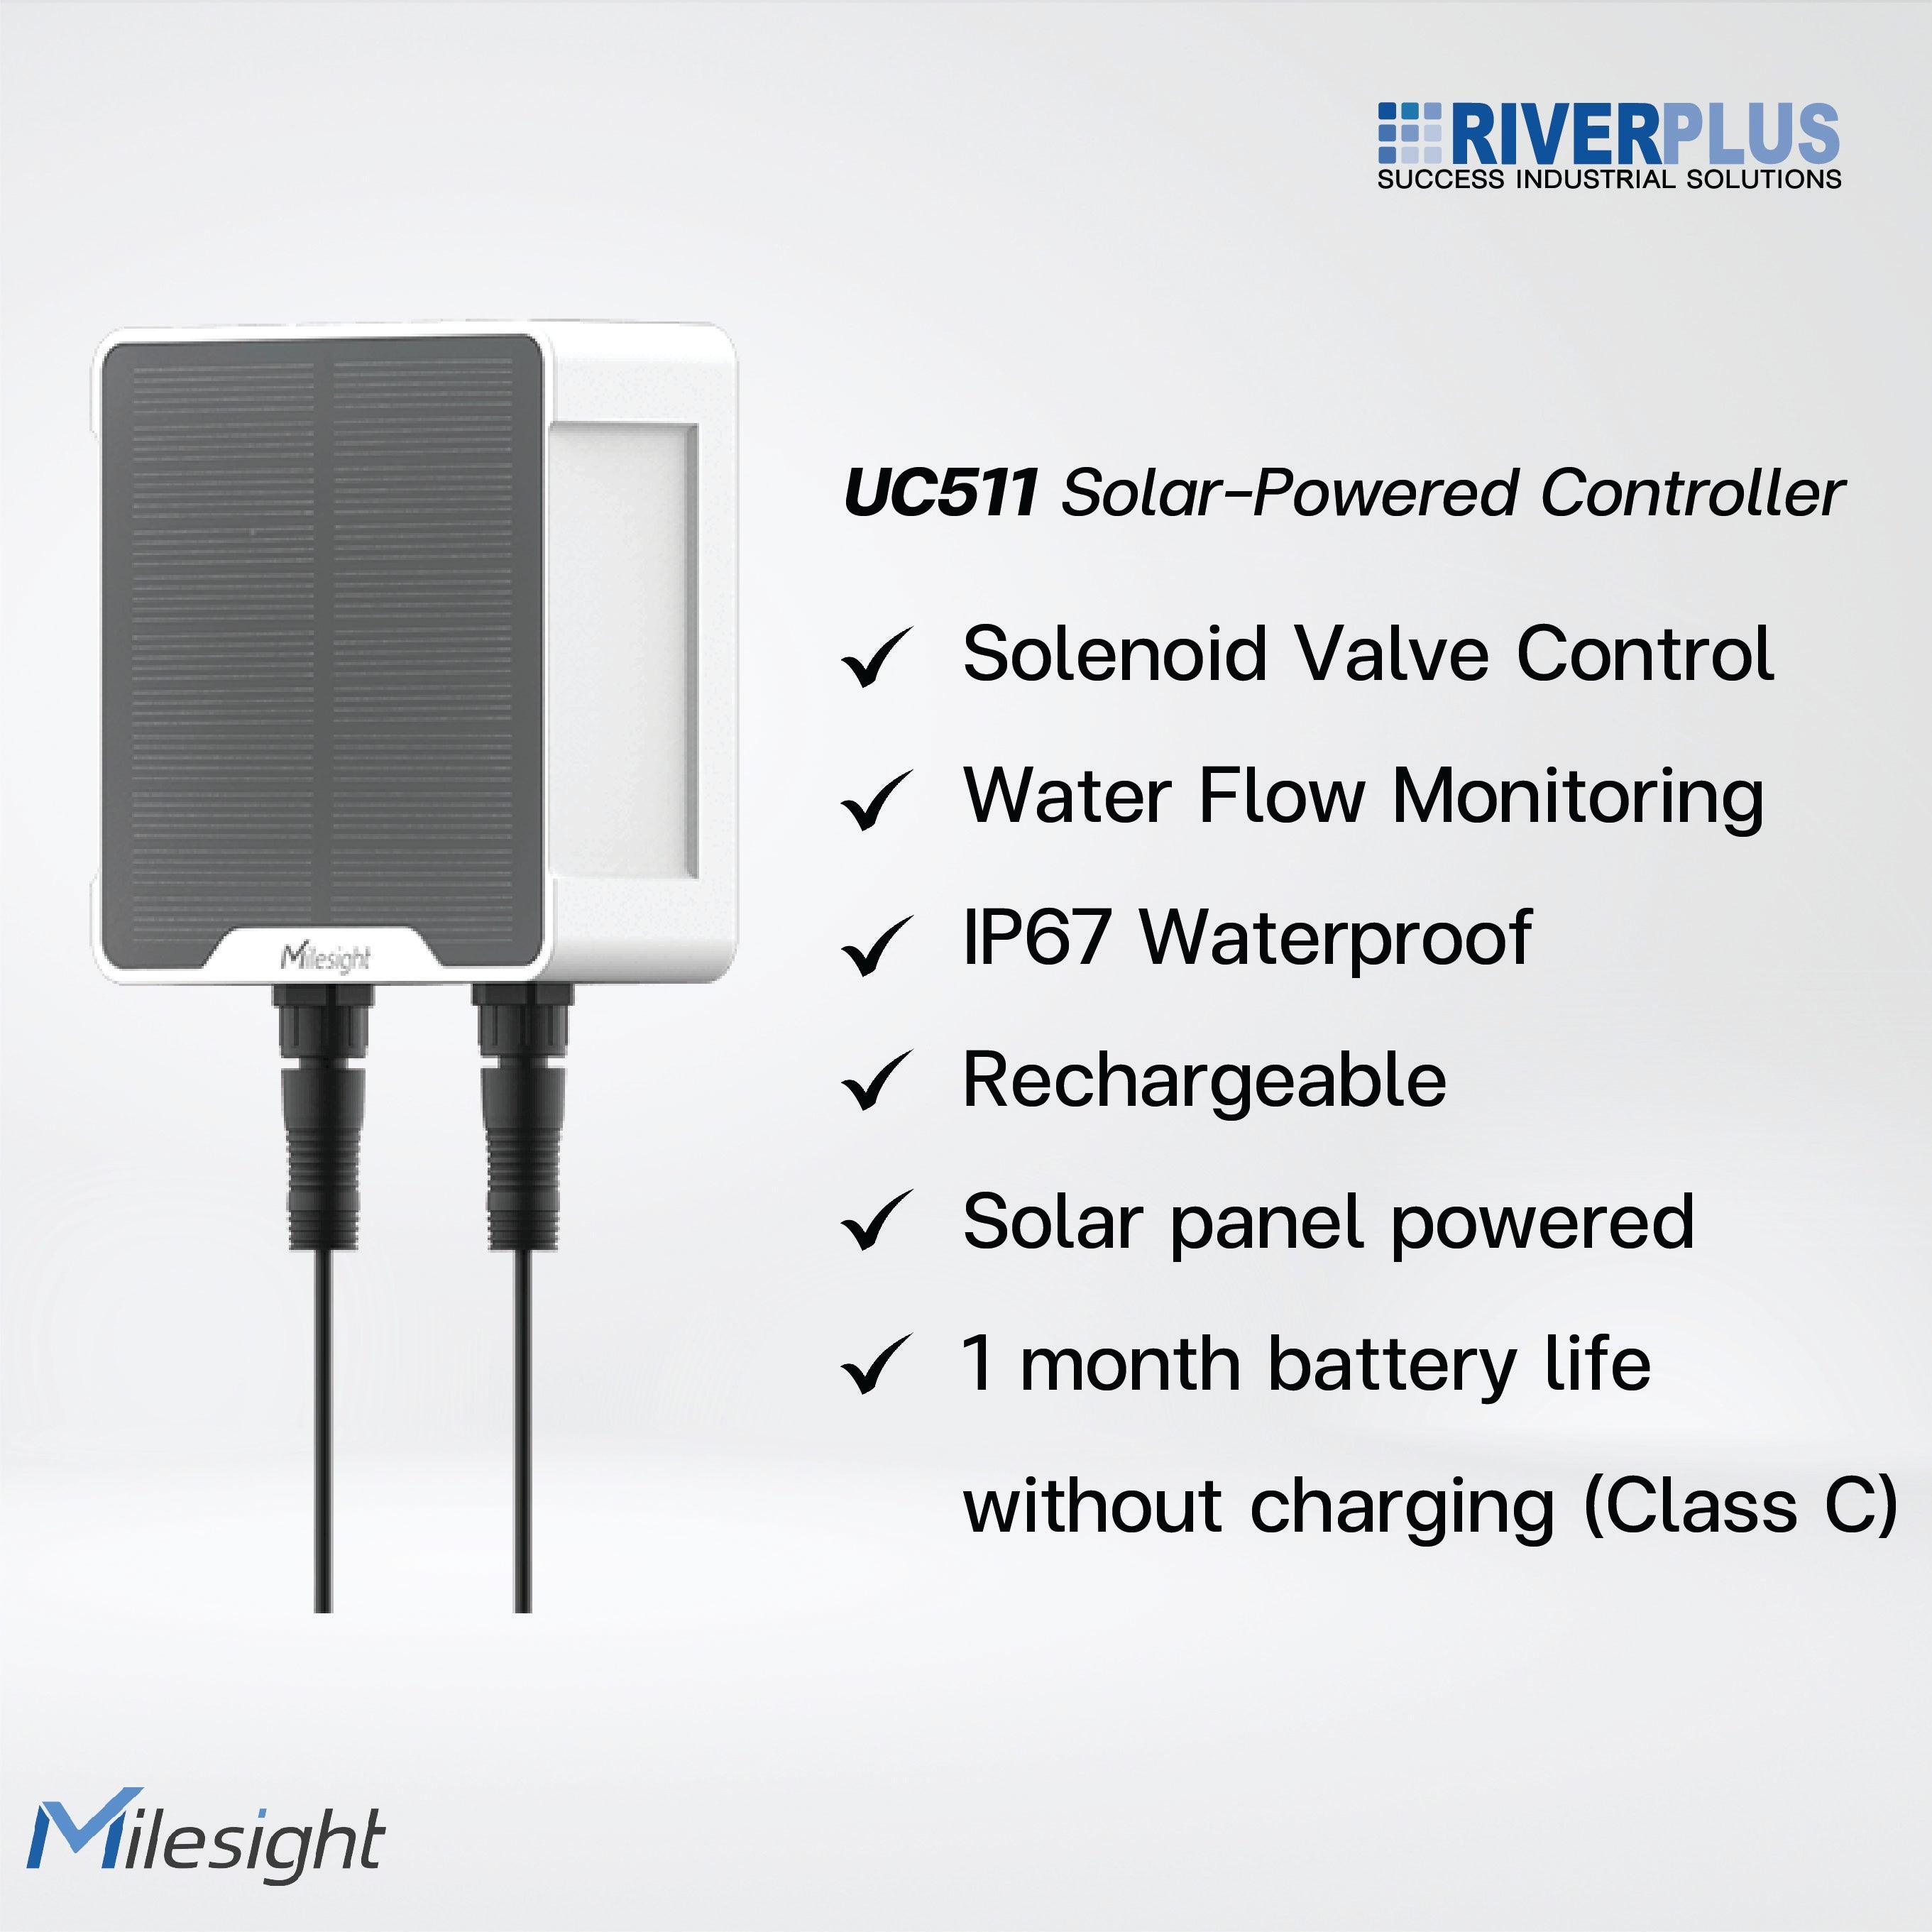 UC511 Solenoid Valve Controller - Riverplus